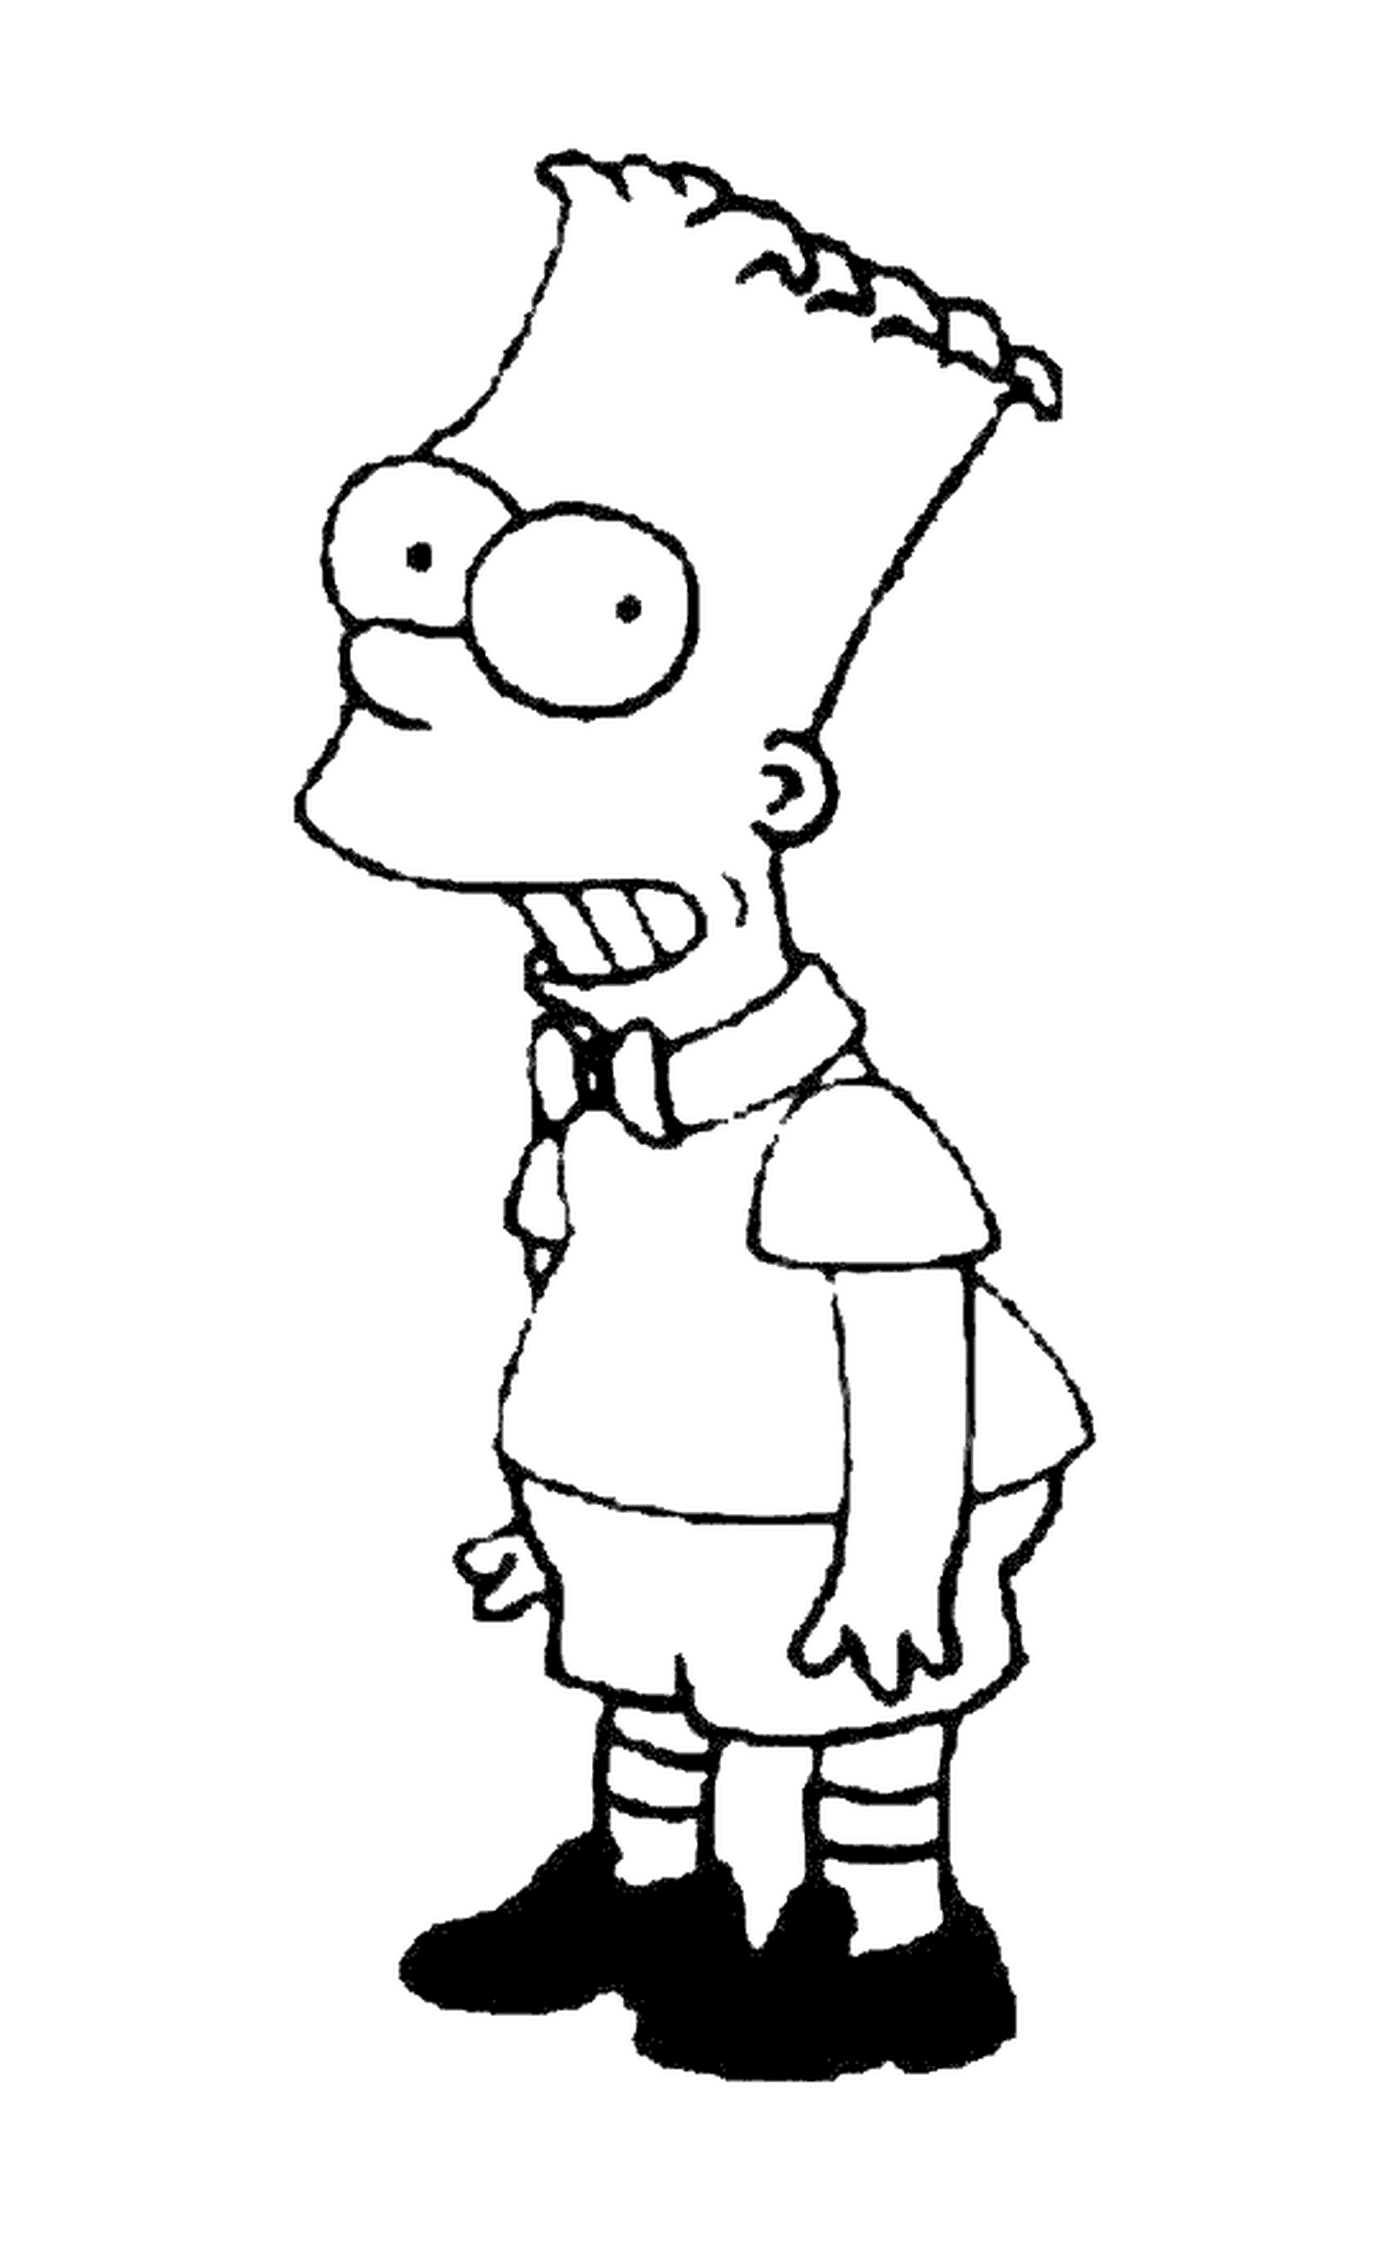  Барт как образцовый ребёнок, персонаж Симпсонов 